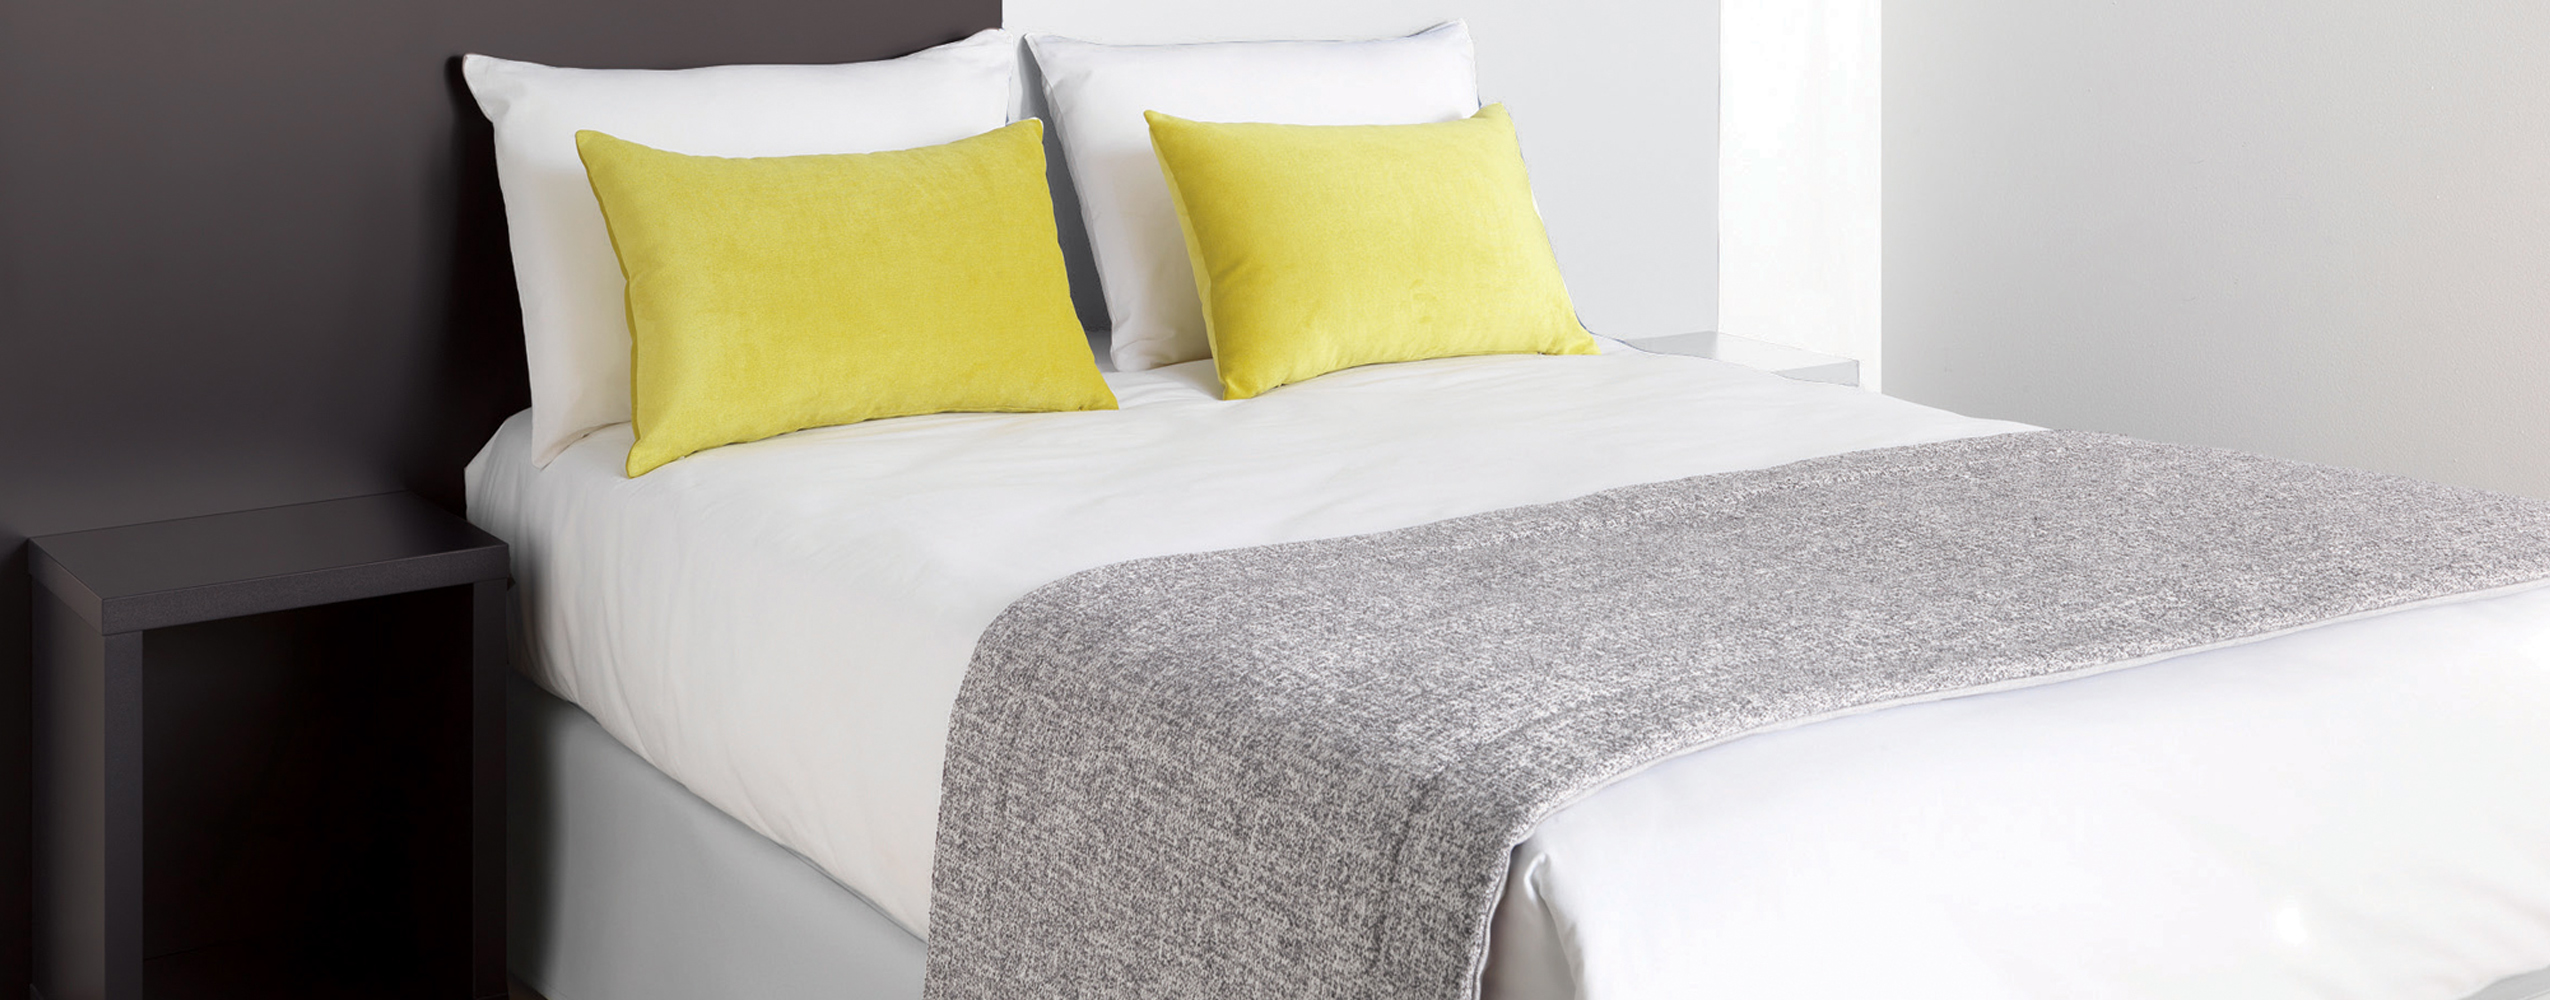 Tête de lit double panneaux pour hôtels avec habillage de lit assorti